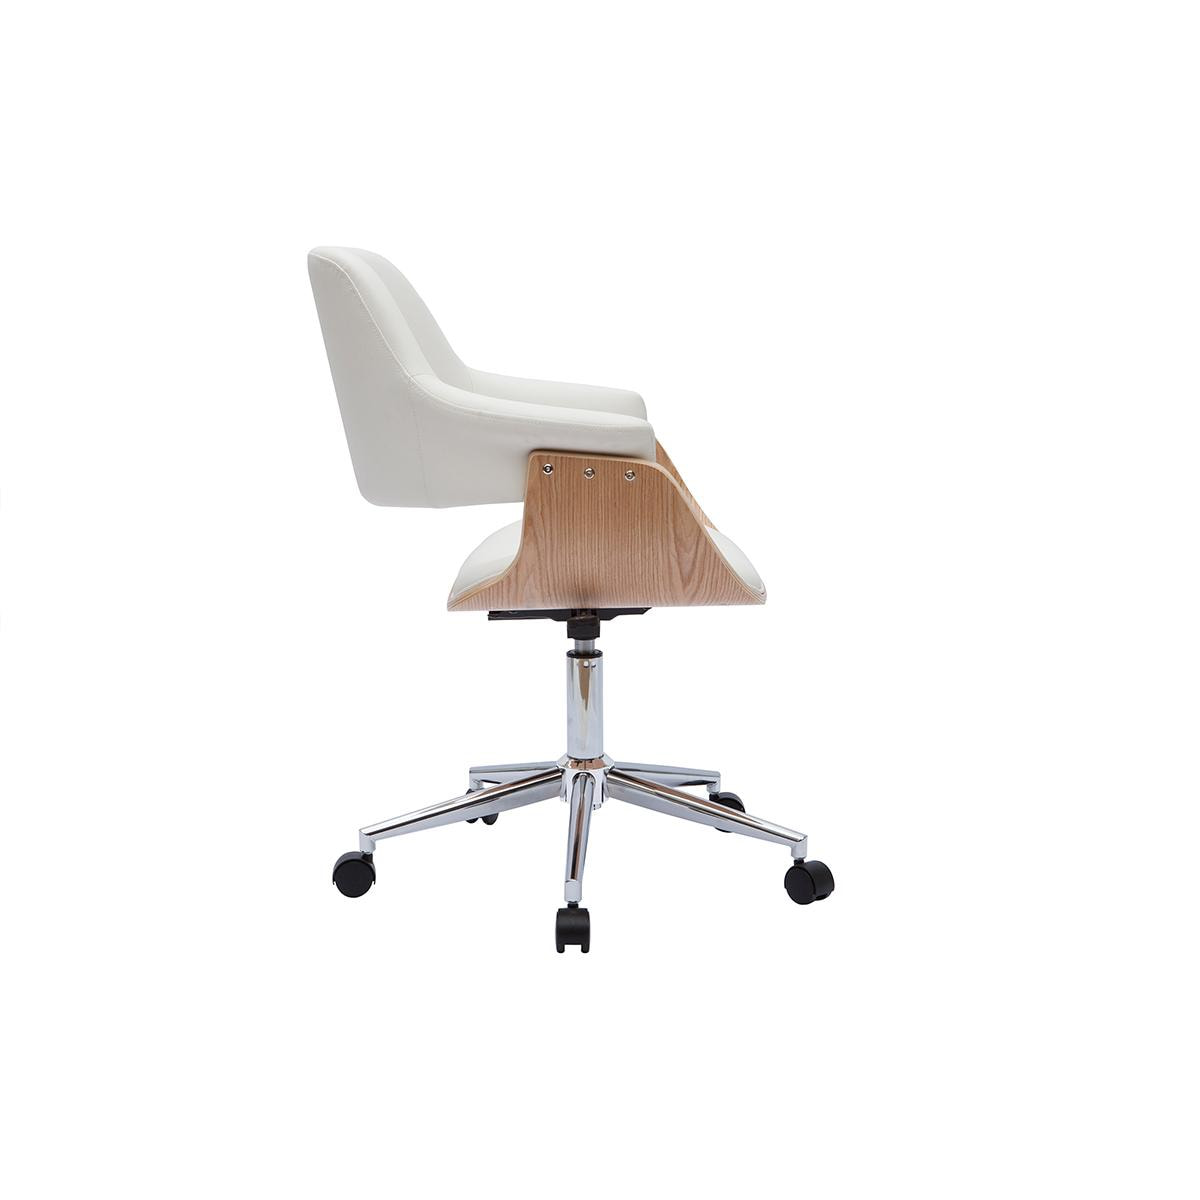 Miliboo - Chaise de bureau à roulettes design blanc, bois clair et